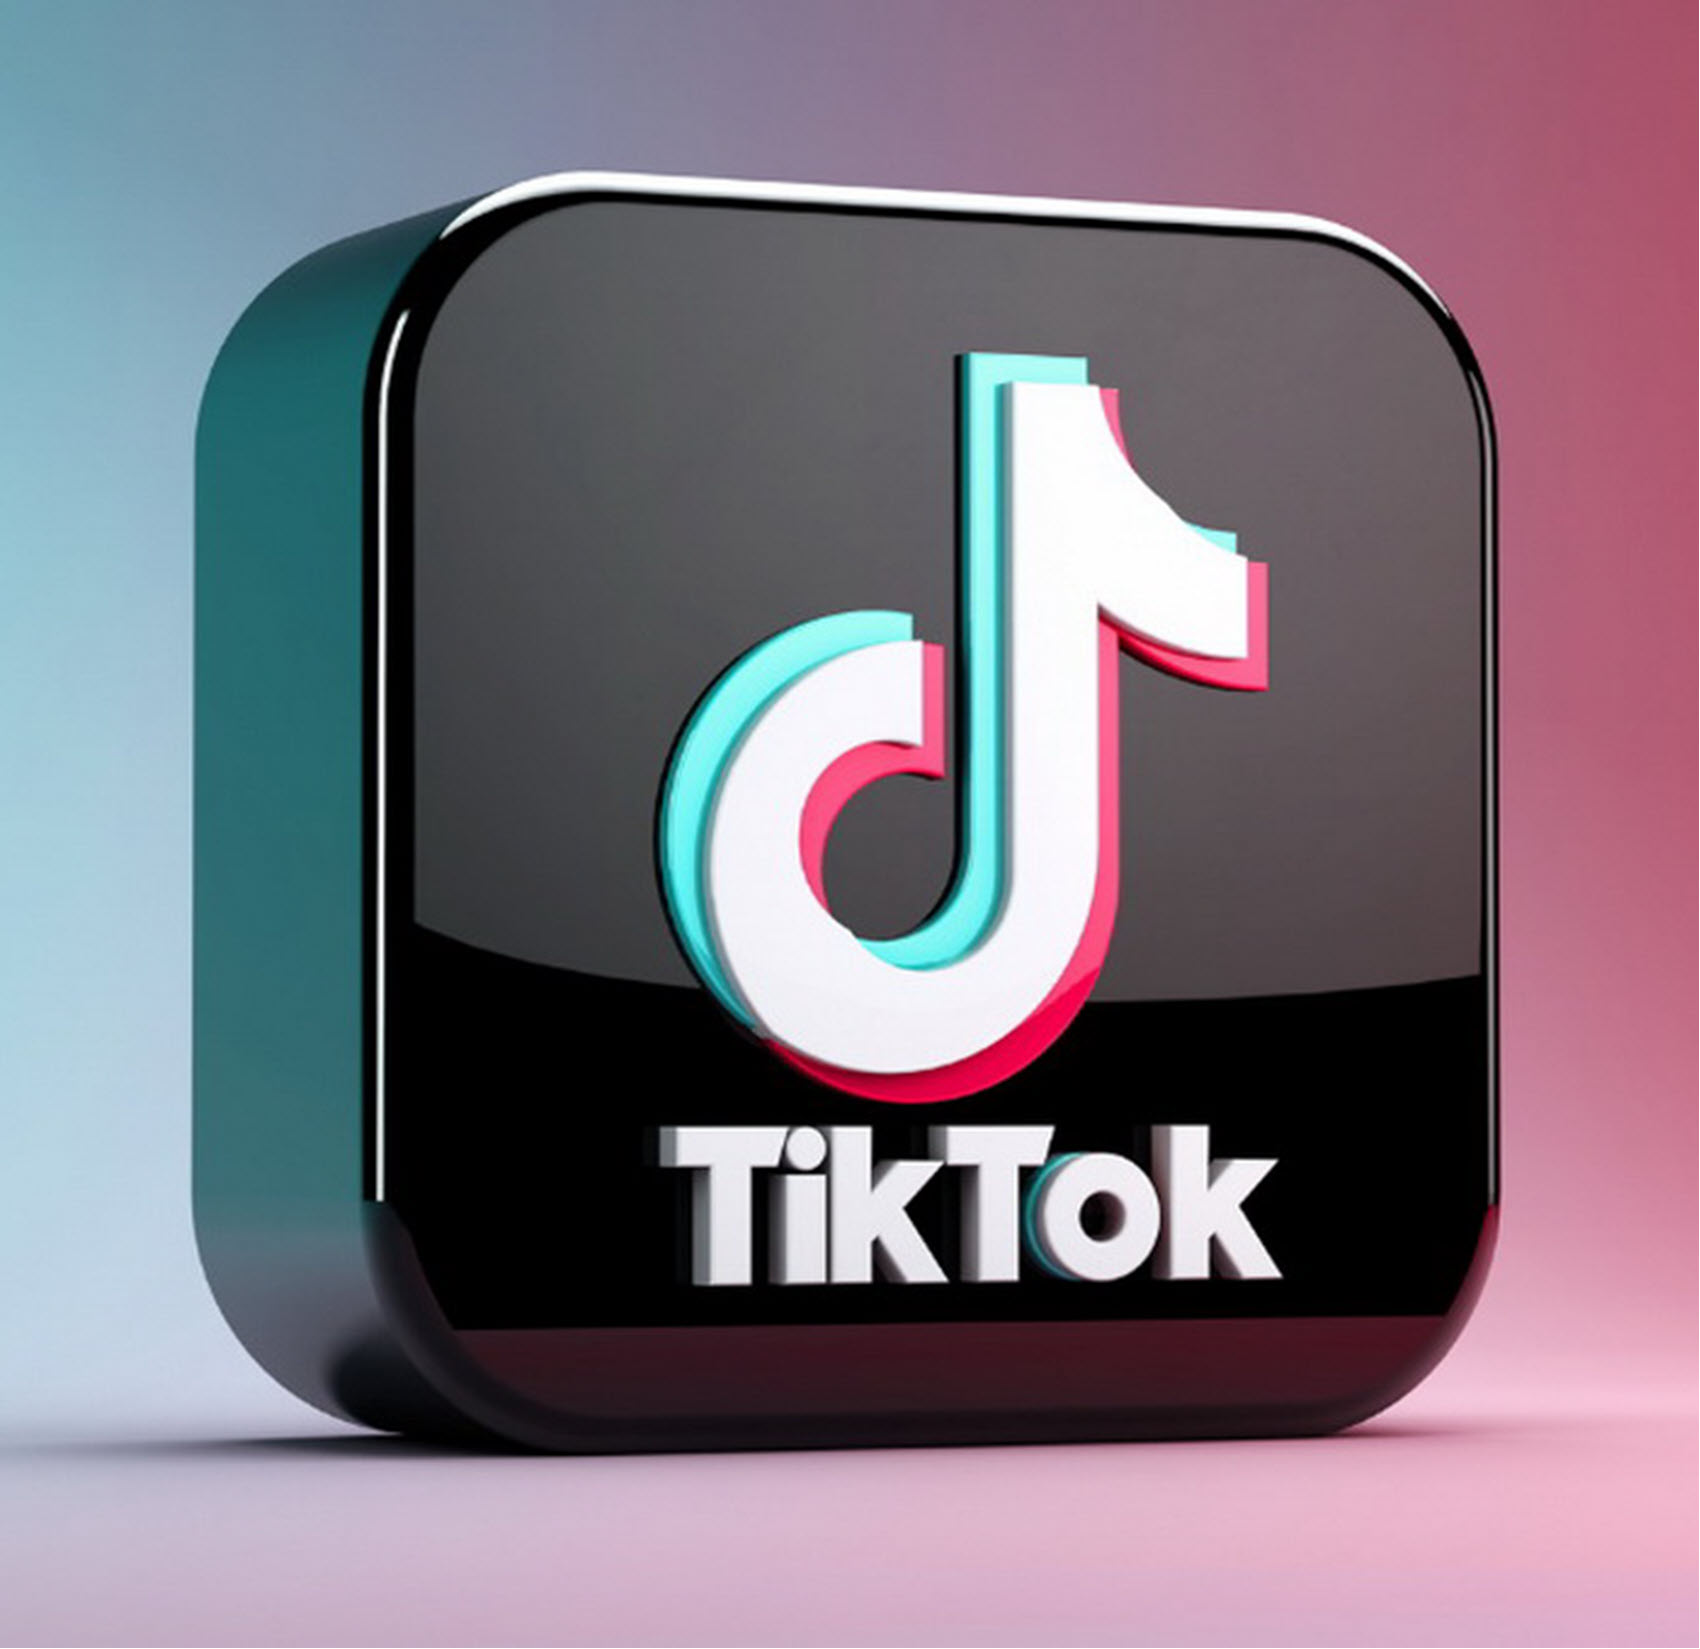 Το TikTok βελτιστοποιεί την εφαρμογή για foldable κινητά και tablets